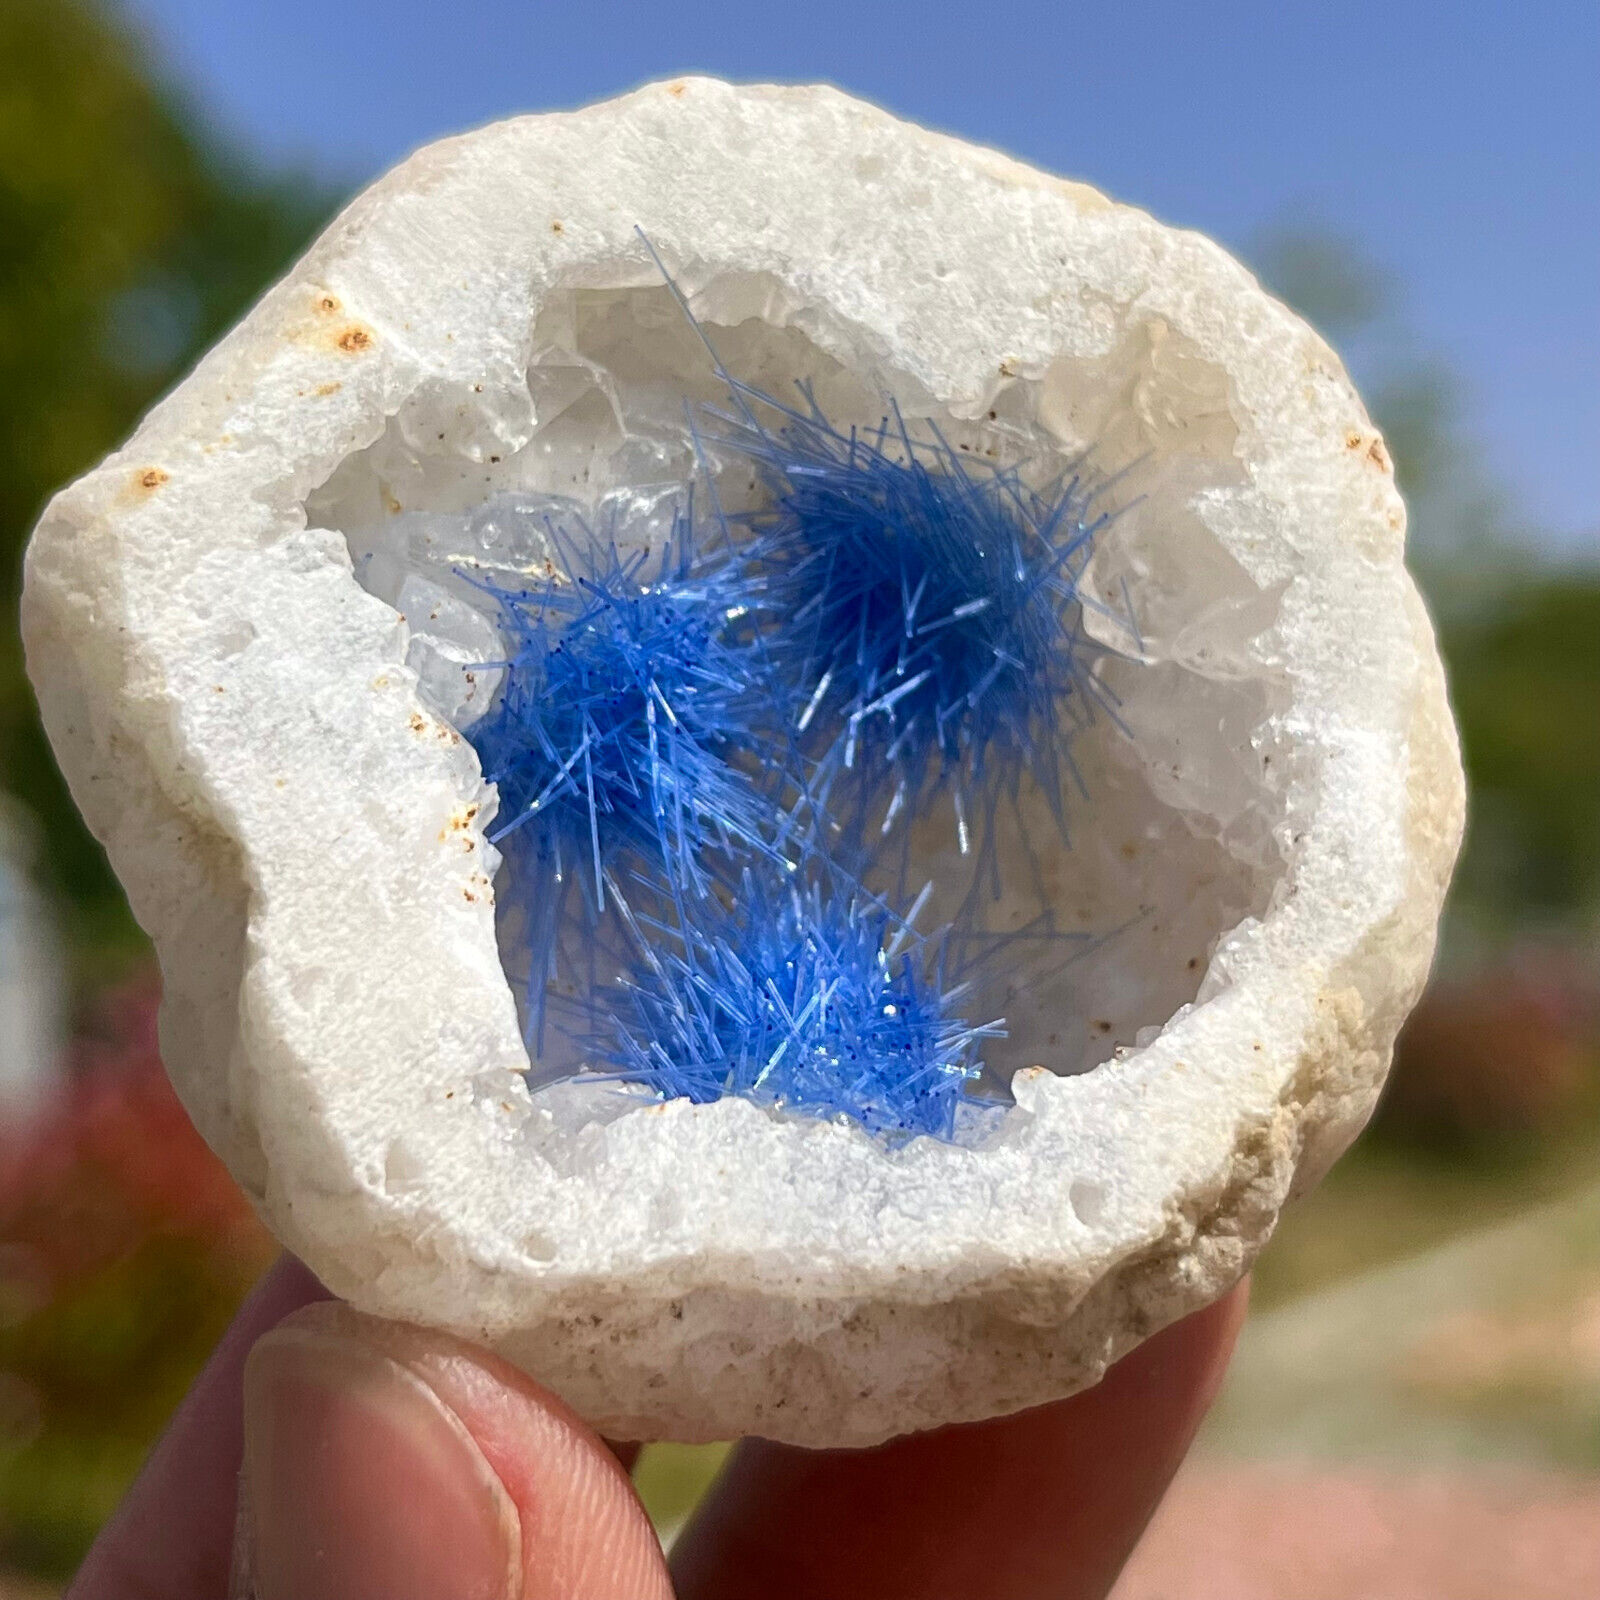 67G Rare Moroccan blue magnesite and quartz crystal coexisting specimen